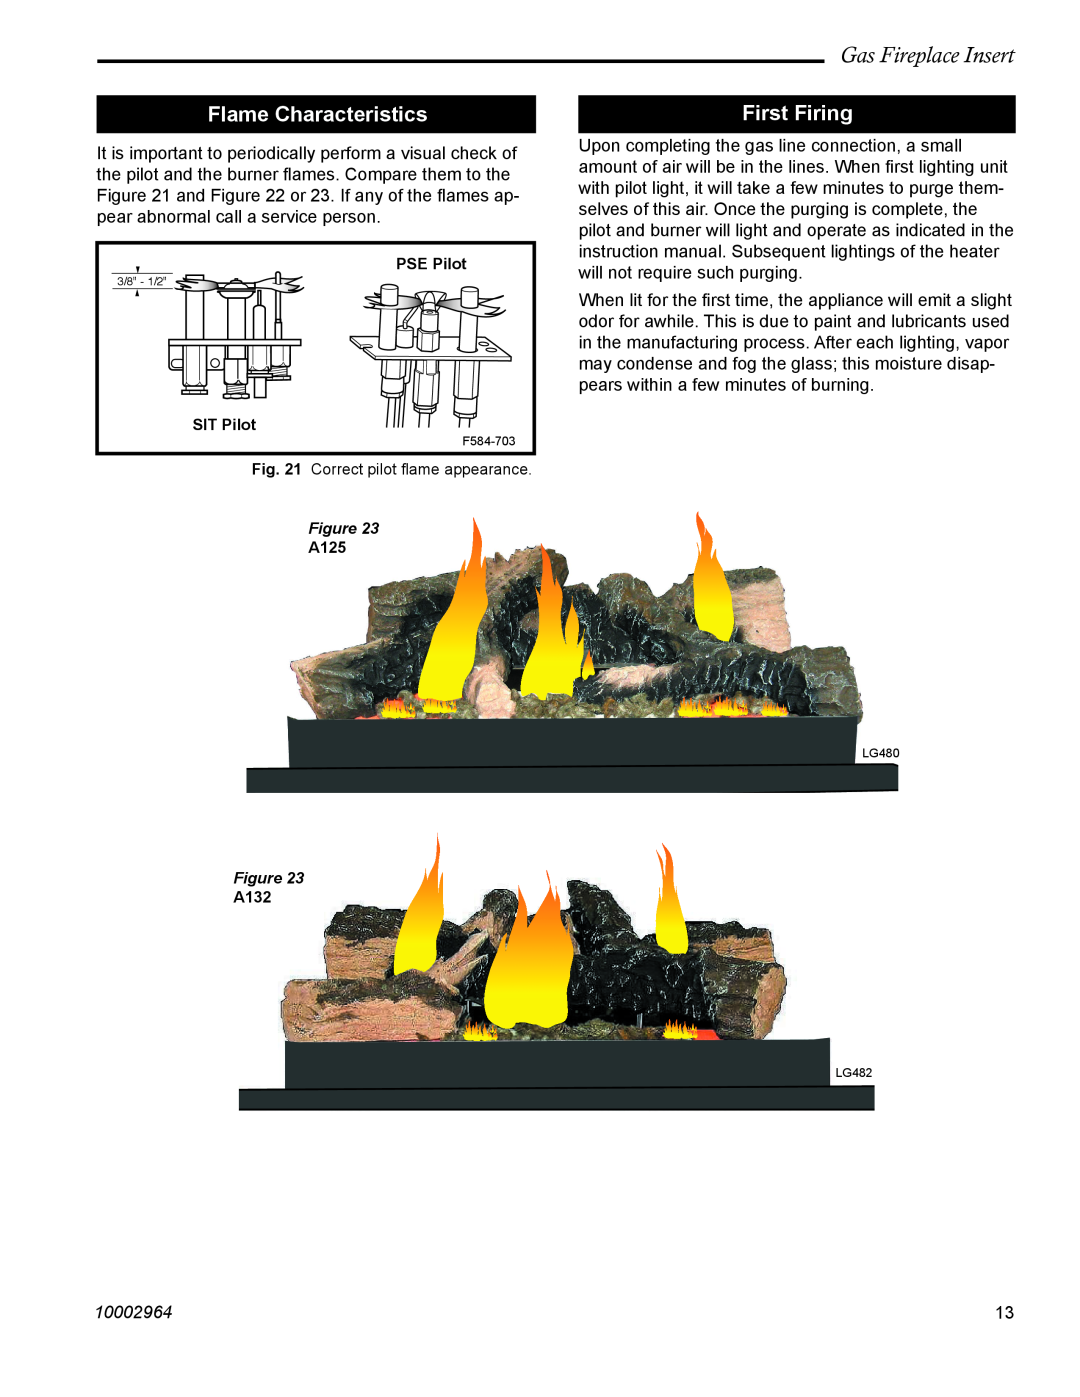 CFM Corporation A132 manual Flame Characteristics, First Firing, Gas Fireplace Insert, 10002964, PSE Pilot, SIT Pilot, A125 